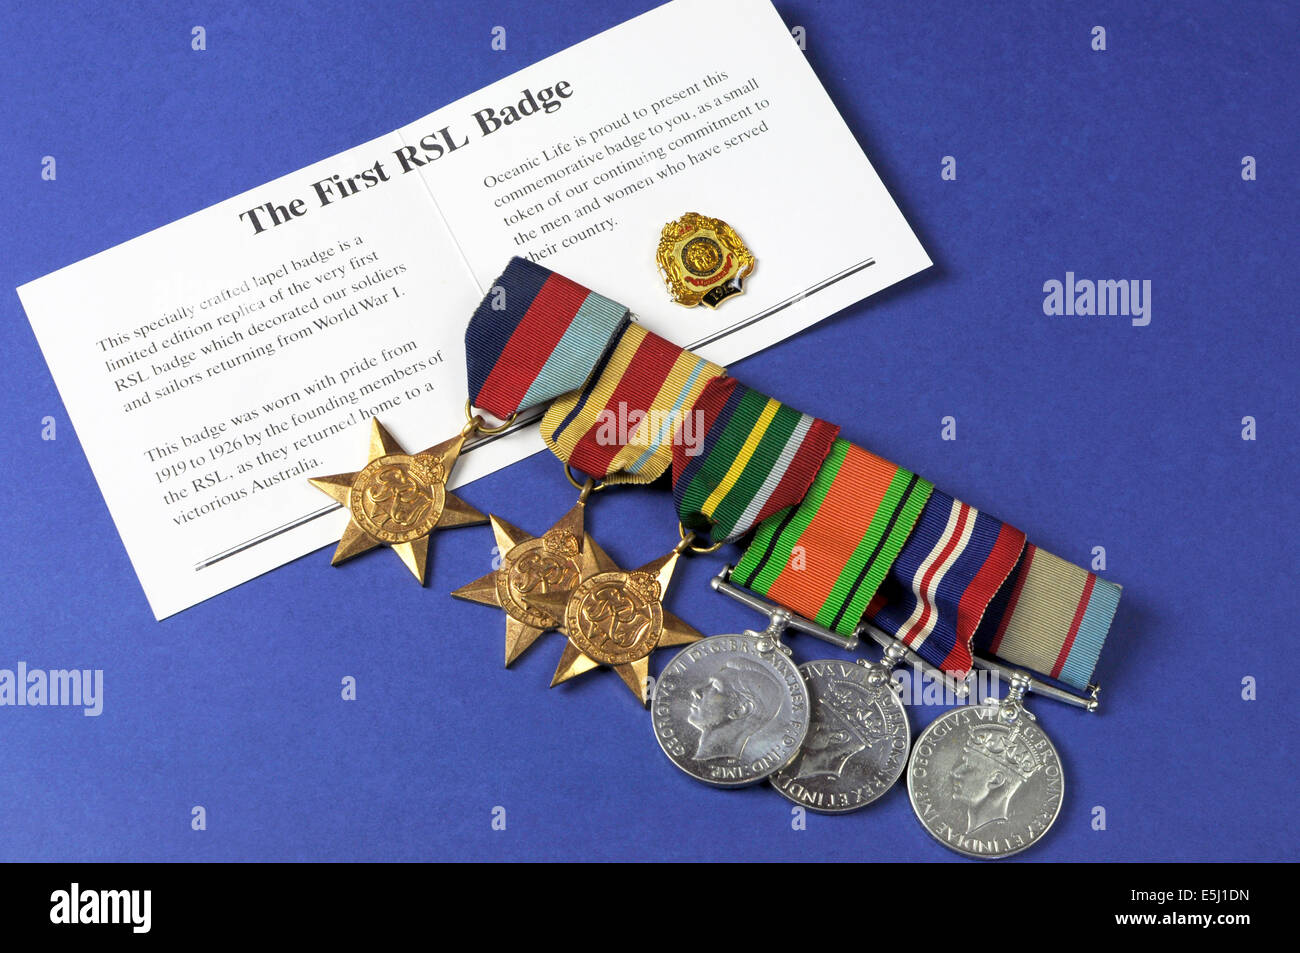 La DEUXIÈME GUERRE MONDIALE, Australian Army Corps militaires médailles et encadrés pour l'ANZAC day le 25 avril, jour du Souvenir 11 Novembre Banque D'Images